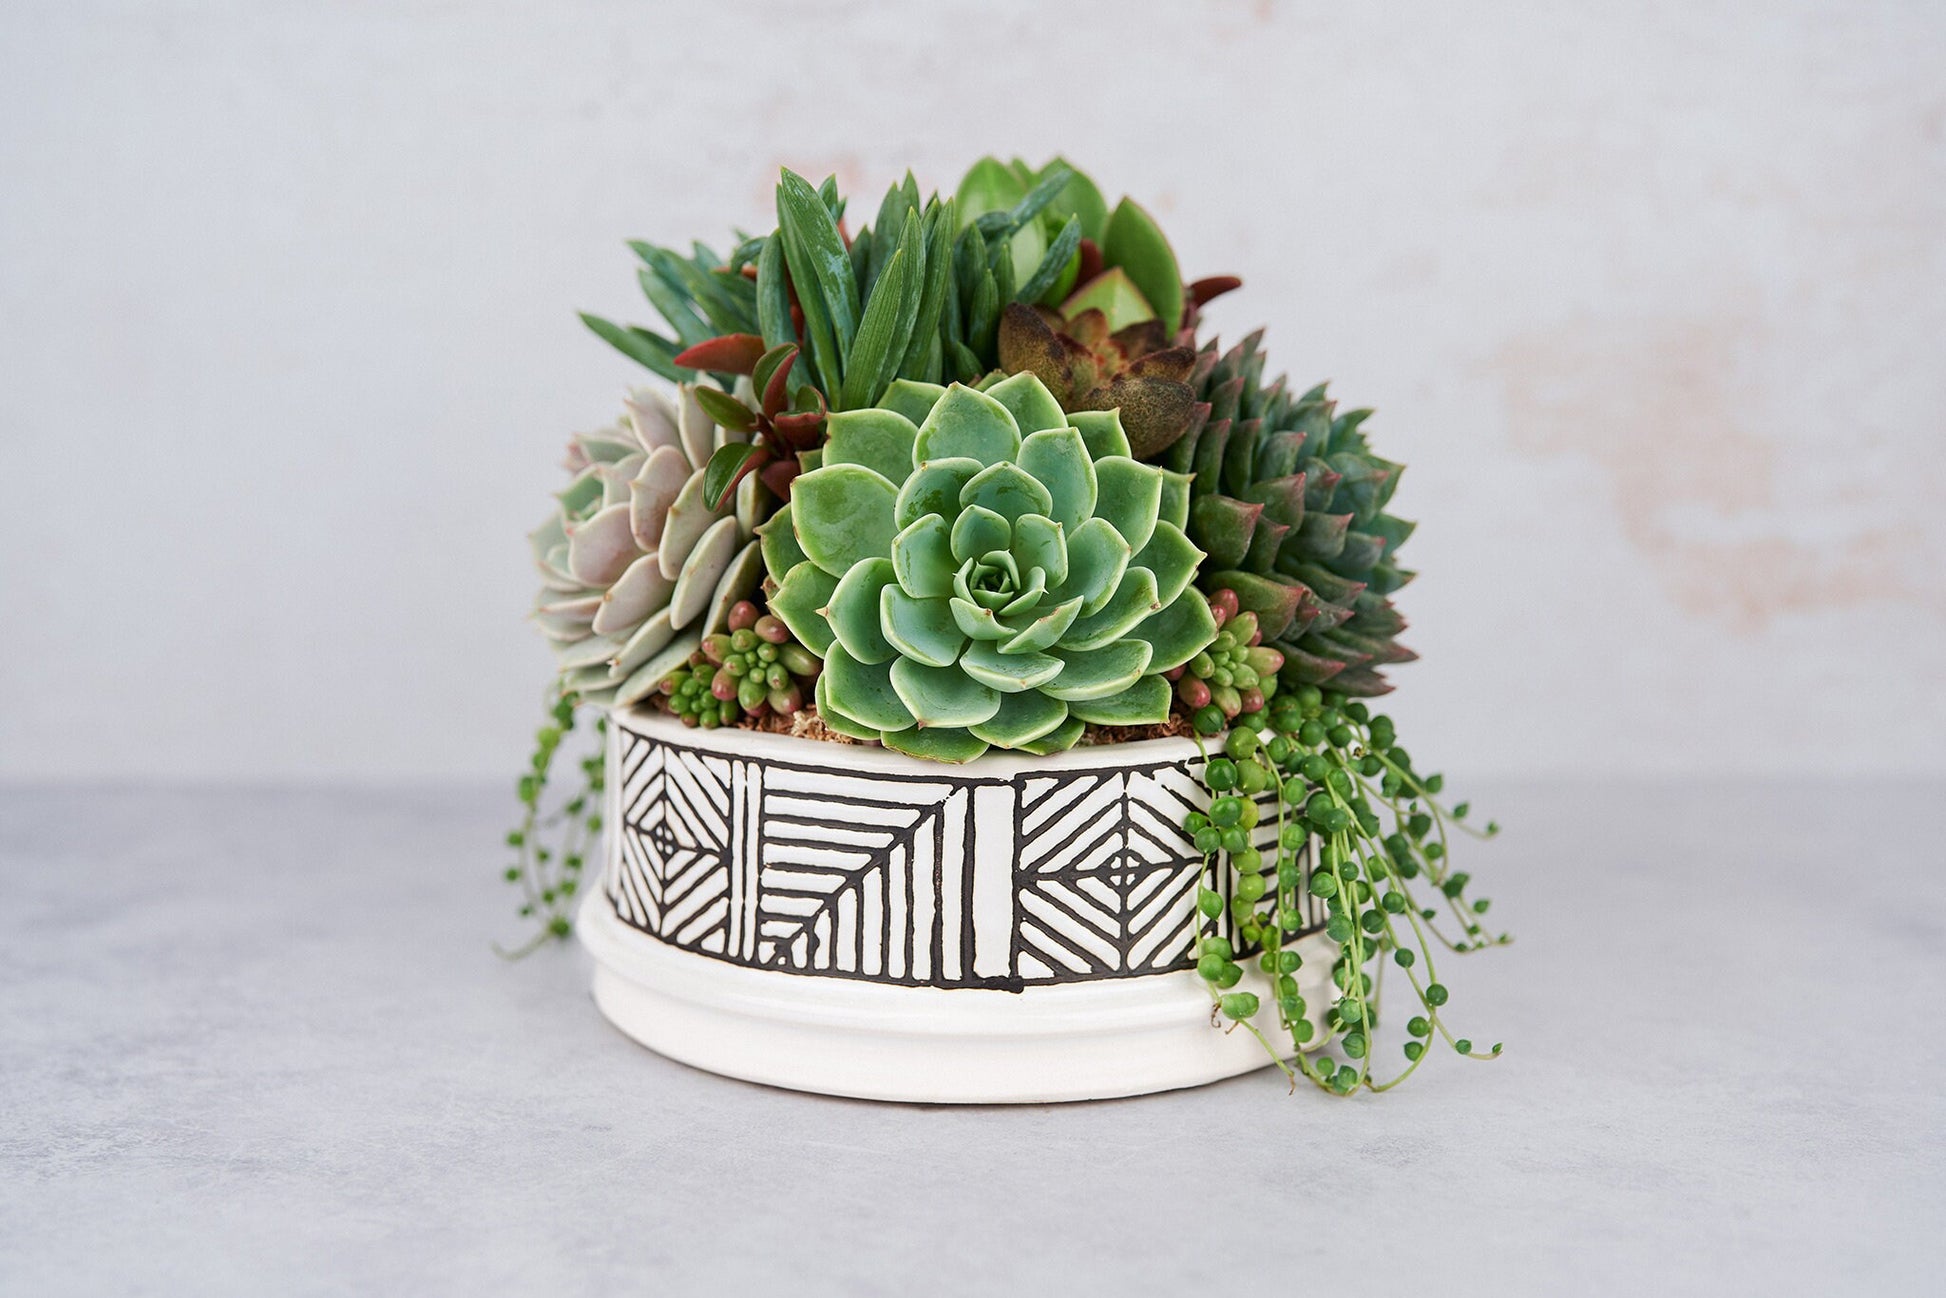 Art Bowl Succulent Arrangement Planter: Modern Living Succulent Gift, Centerpiece for Weddings & Events, Housewarming Gift